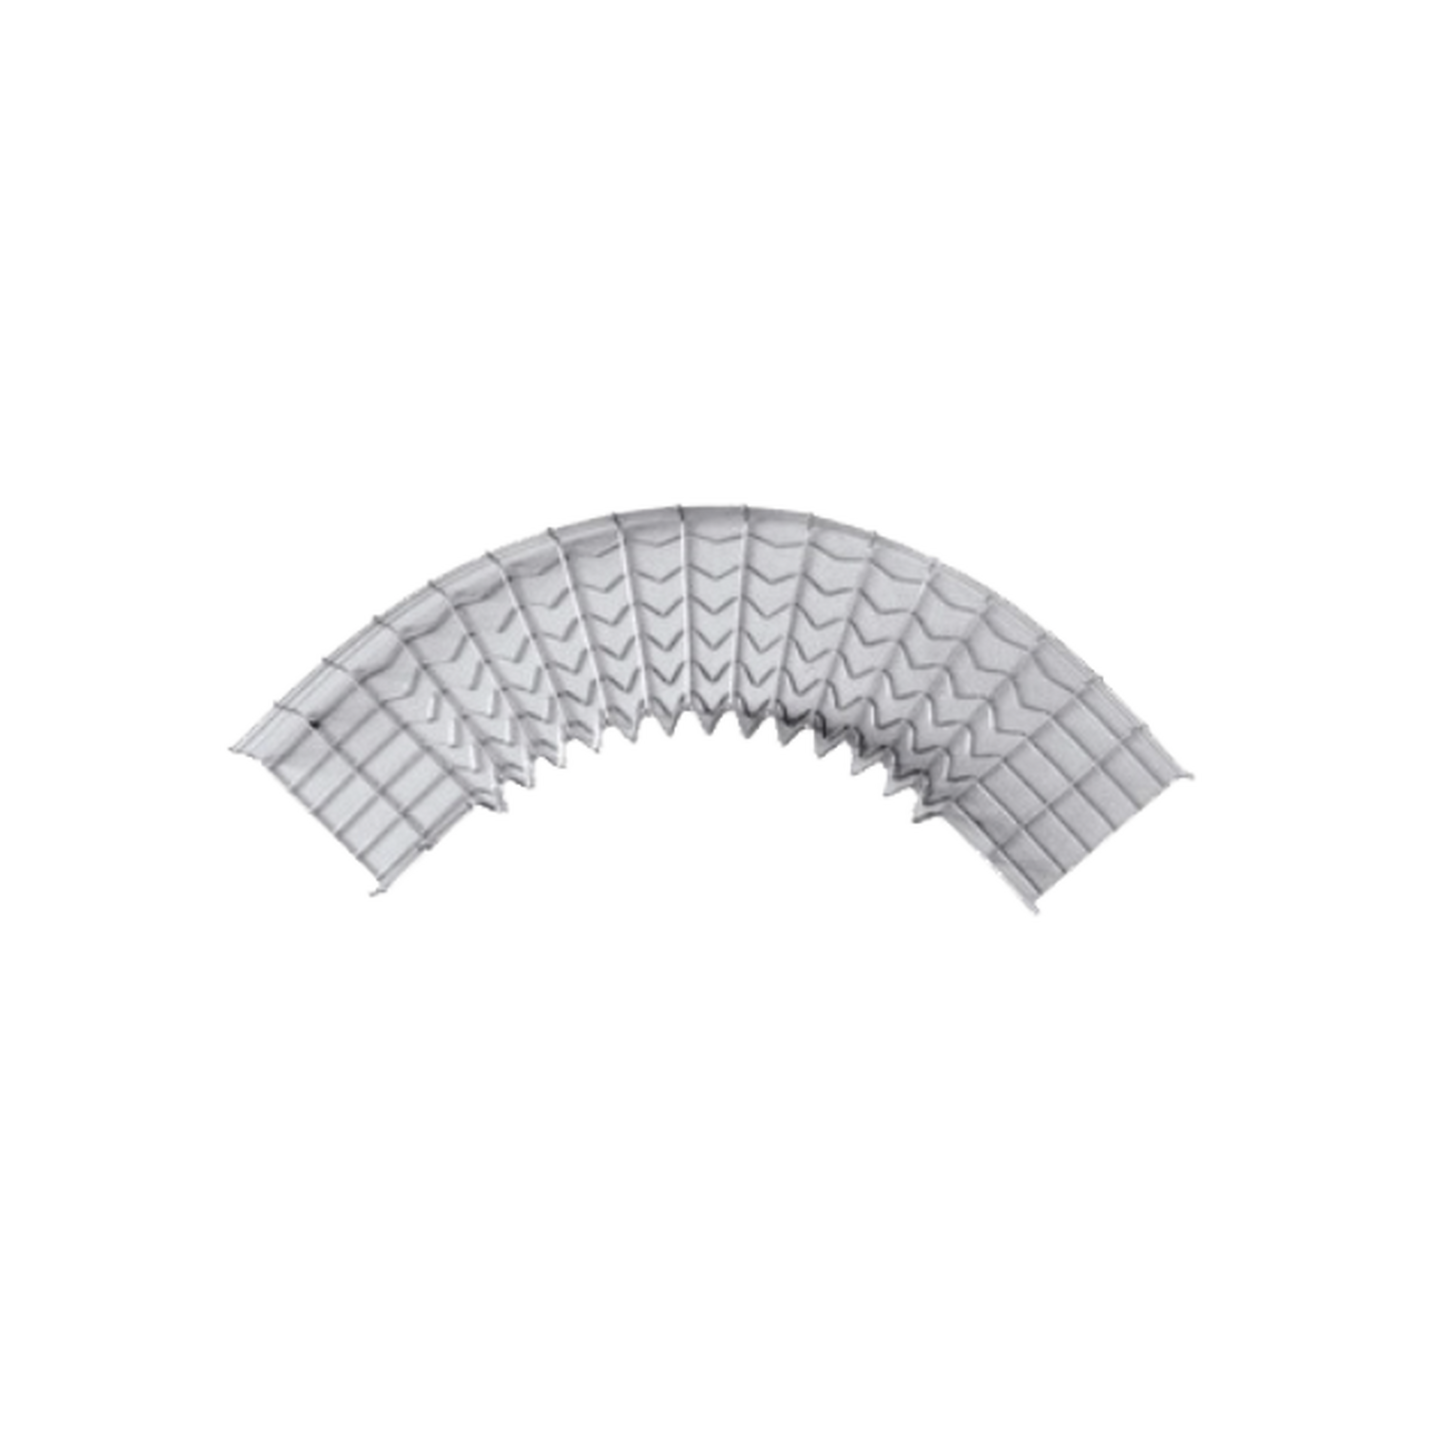 Curva pre-fabricada de 90 grados; 54/150 mm de ancho